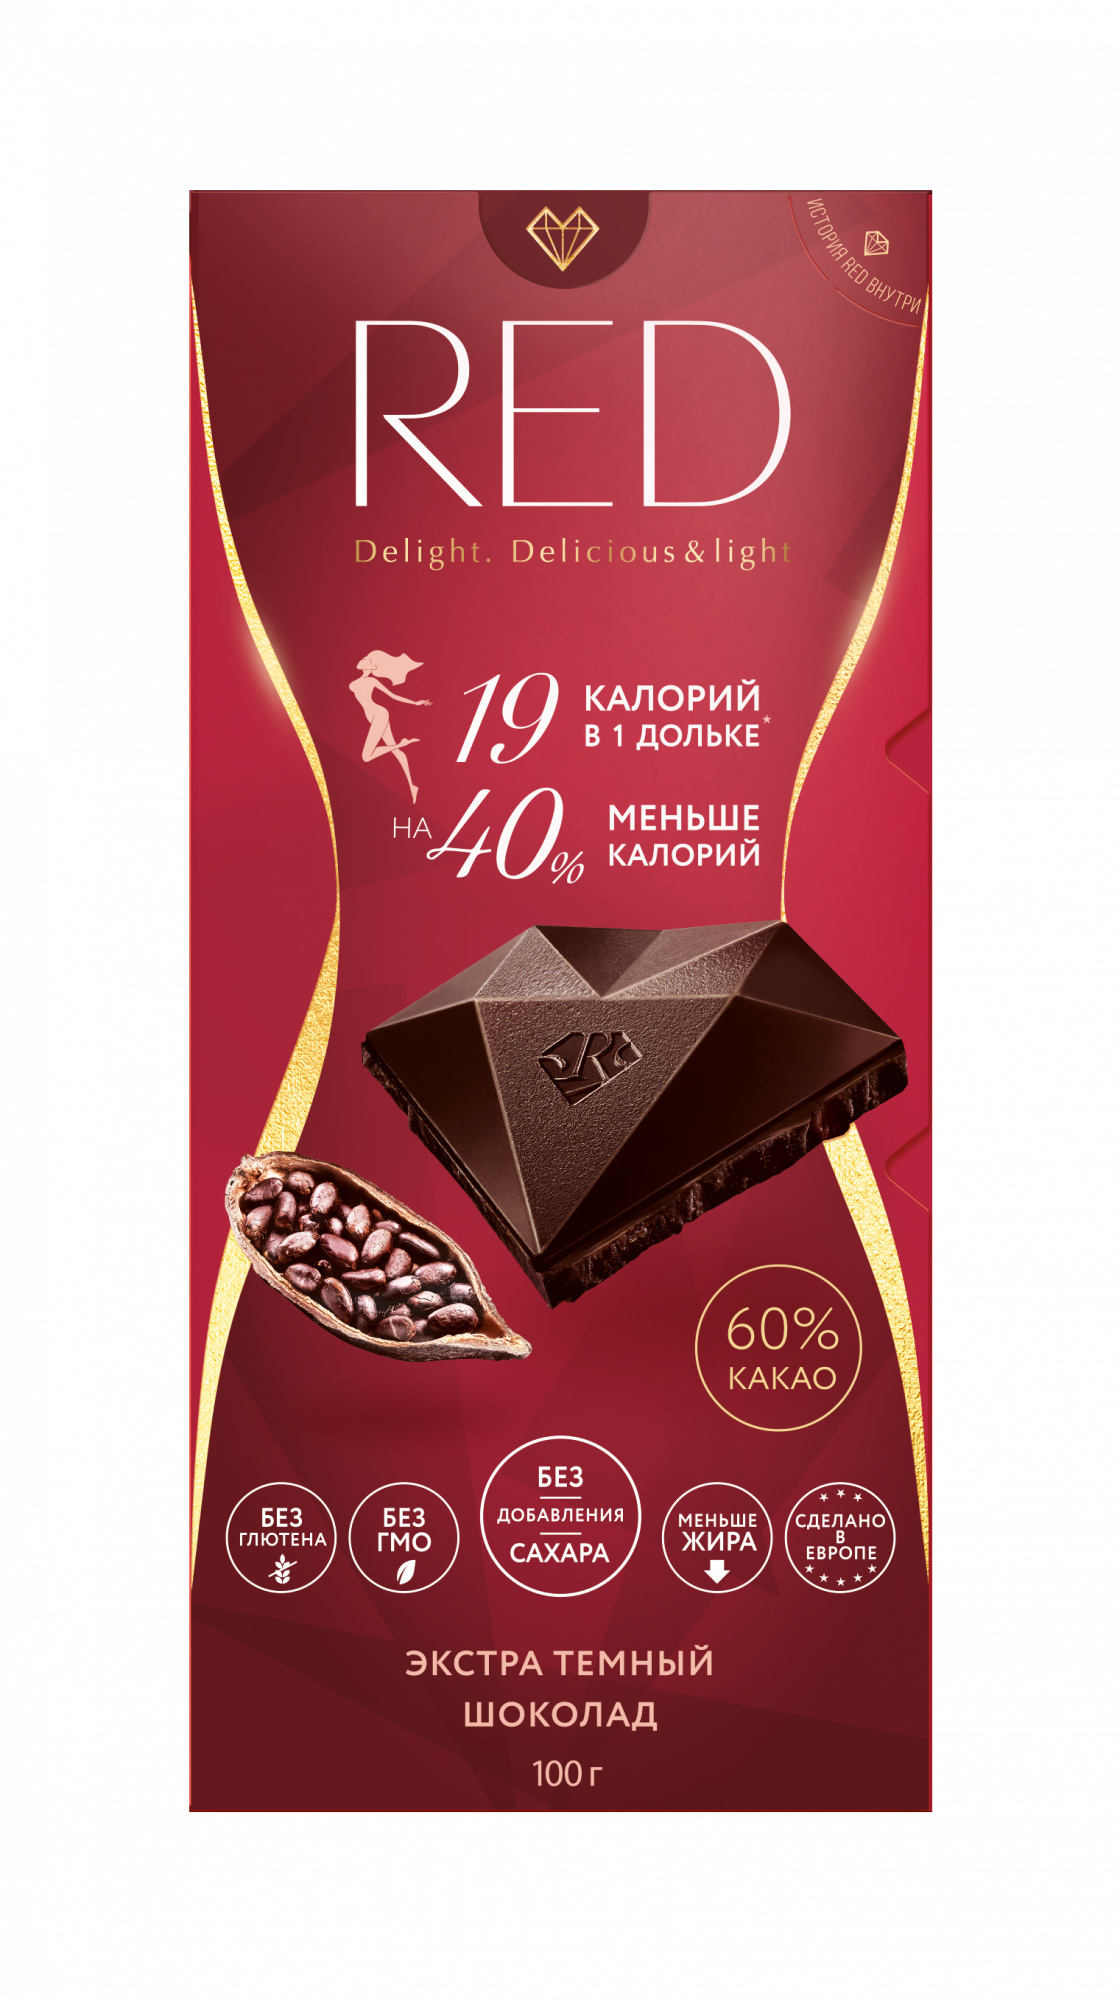 Шоколад экстра темный RED 60% какао, без сахара, 100 г